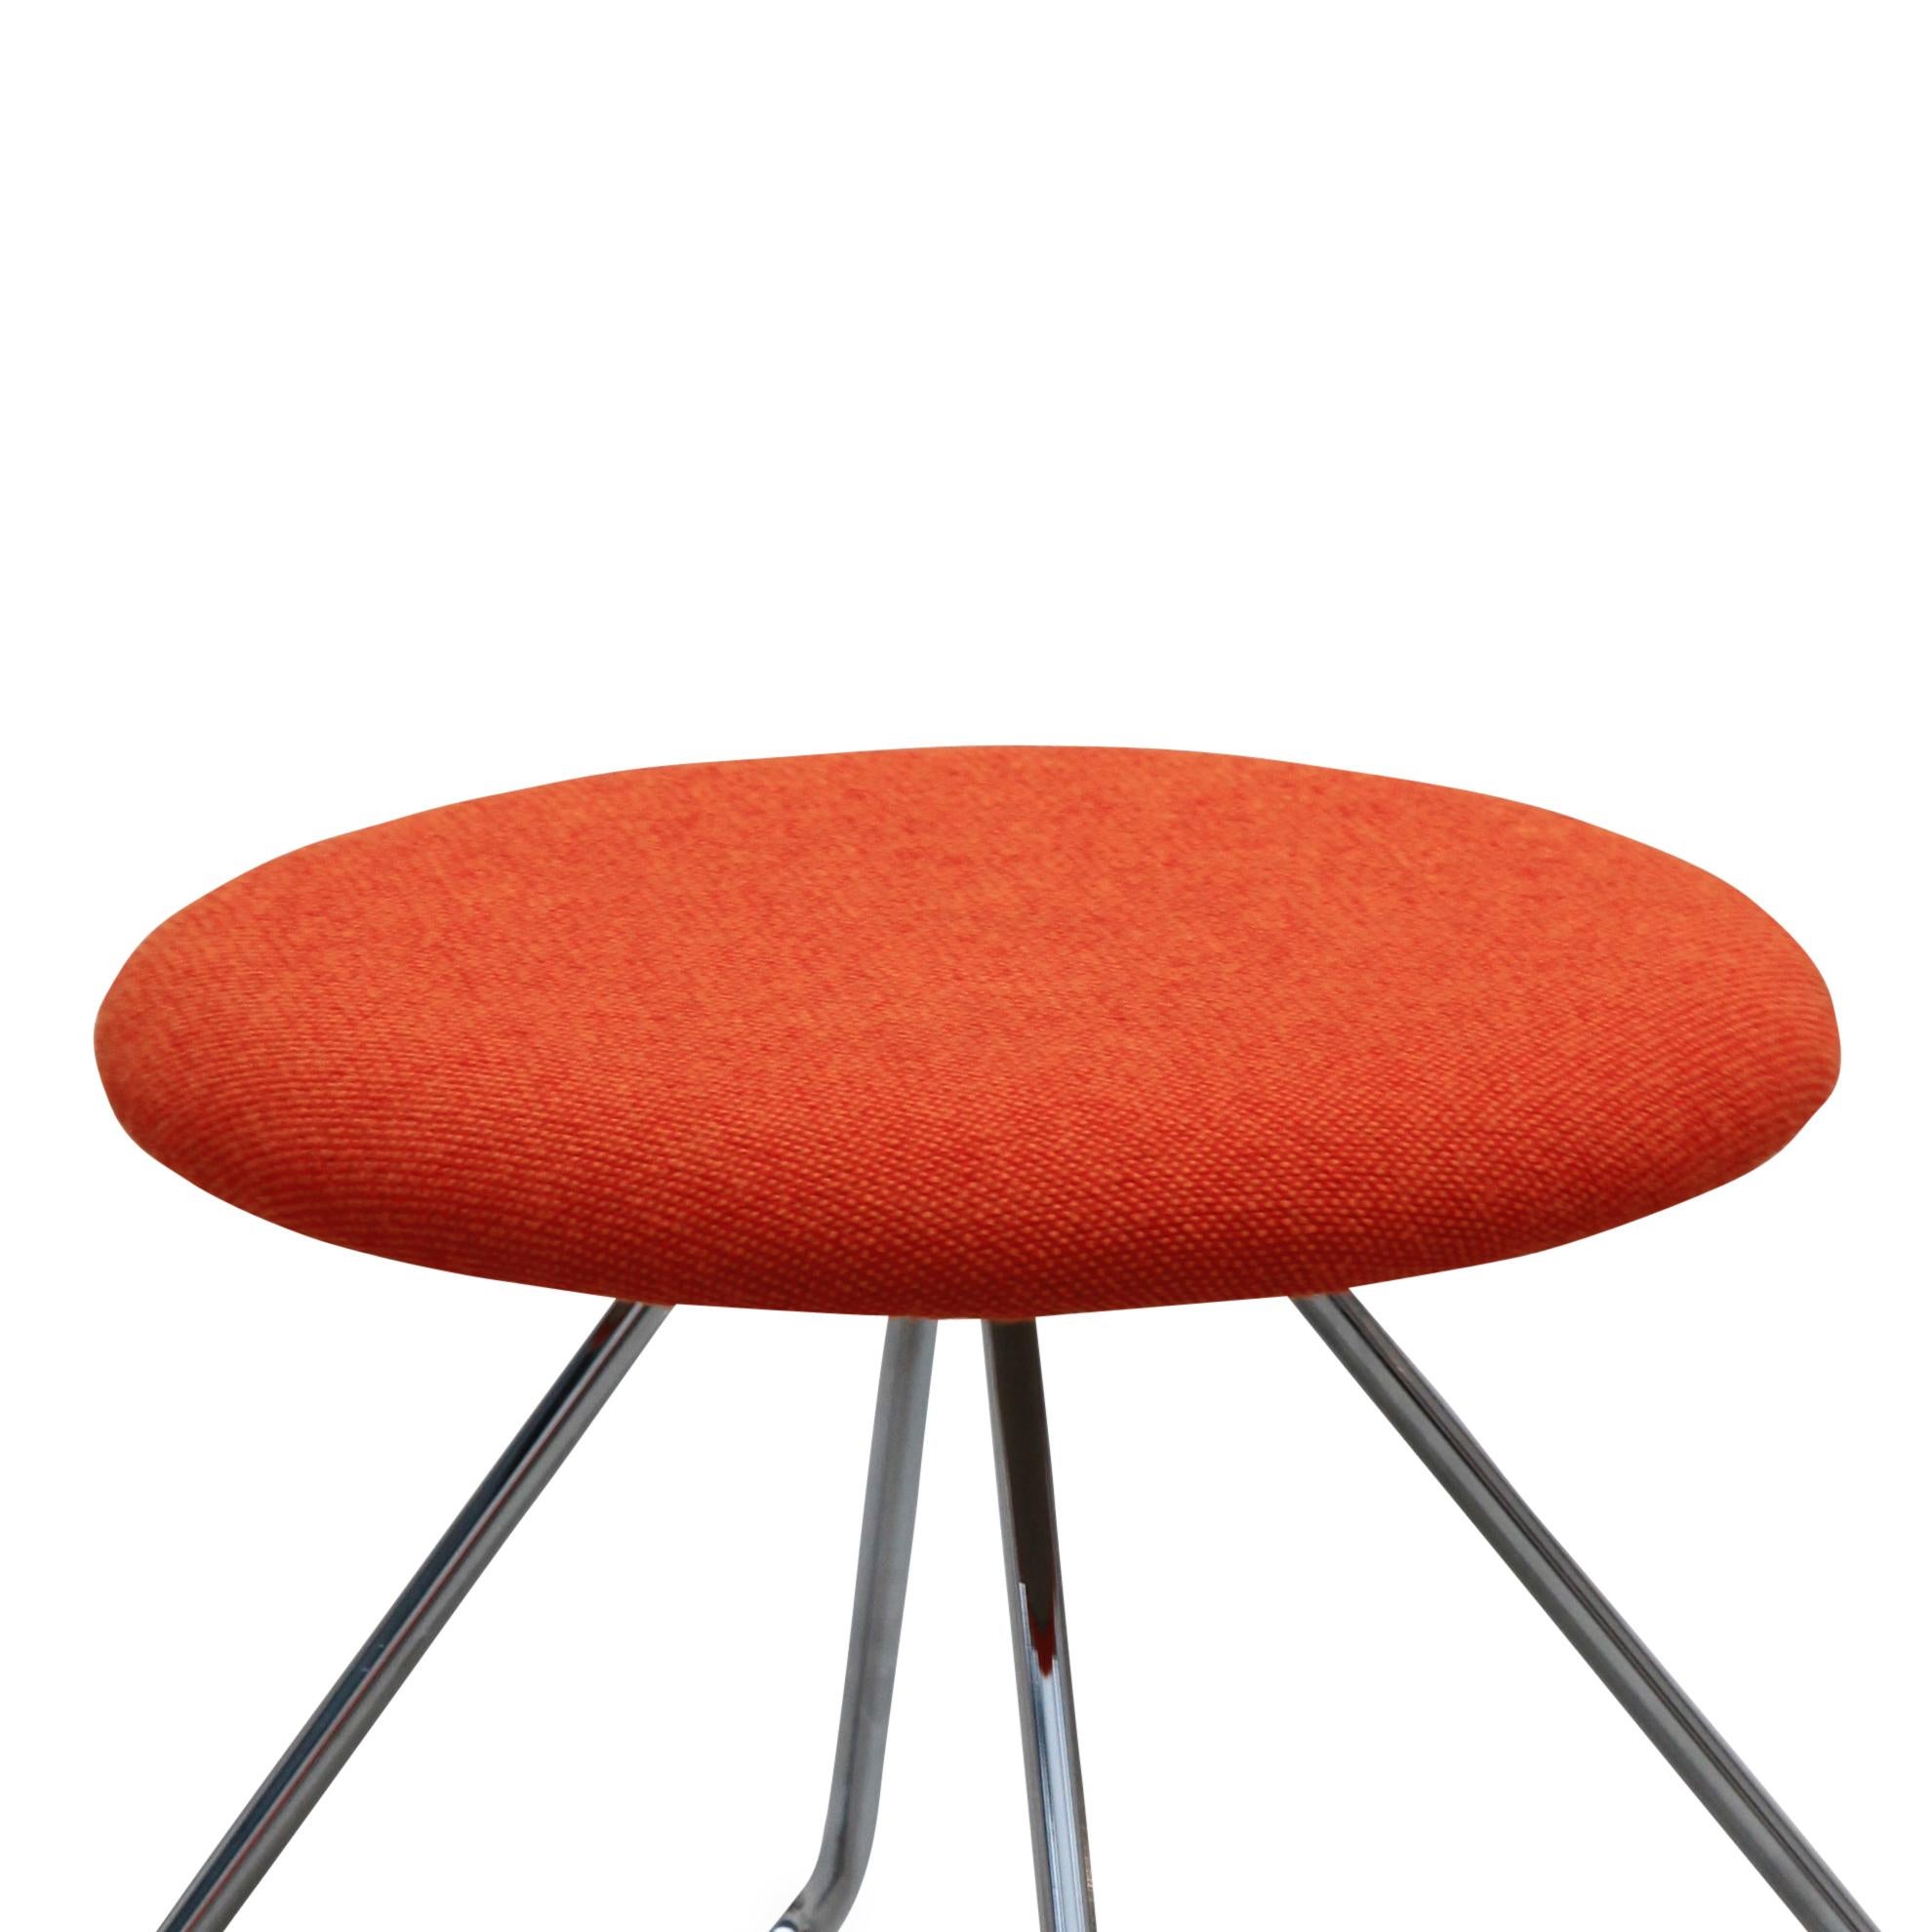 One Collection hat den Sessel Dennie, der 1956 von Nanna und Jørgen Ditzel für Fritz Hansen entworfen wurde, neu aufgelegt. Der Dennie-Stuhl wird durch einen Fußhocker und einen kleinen Tisch ergänzt.

Nanna Ditzel, eine der einflussreichsten